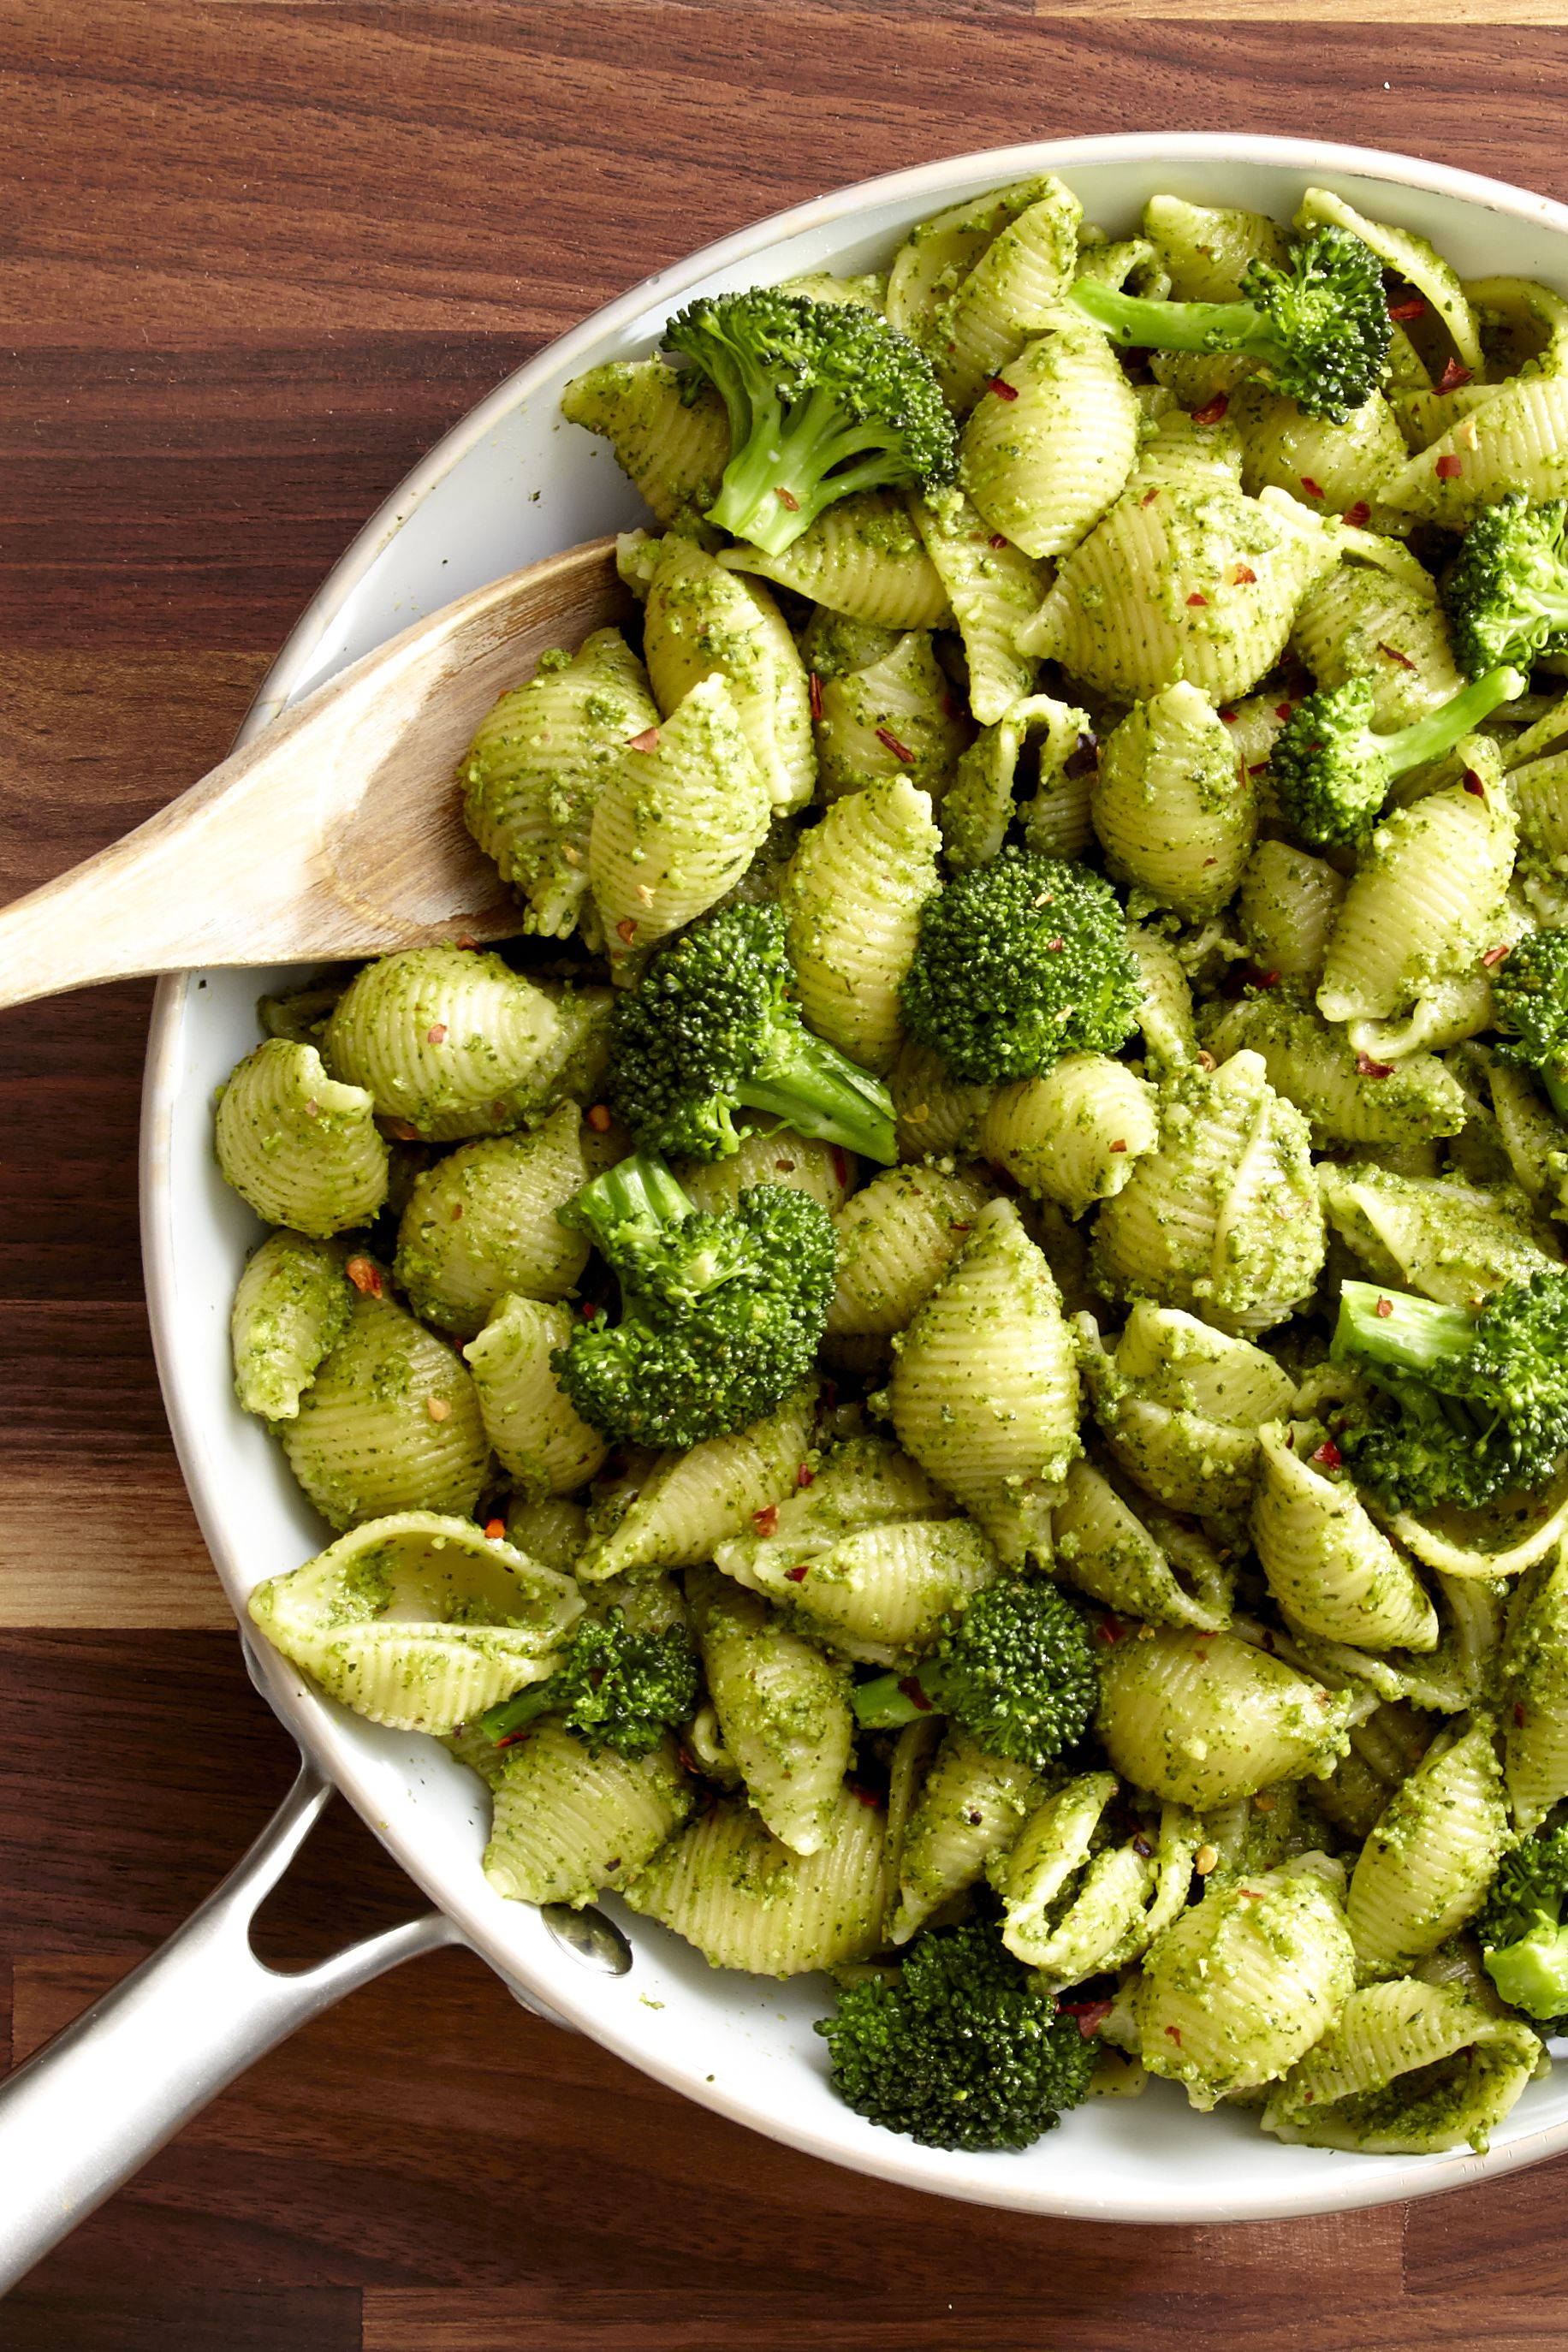 Best Broccoli Pesto Recipe - How to Make Broccoli Pesto